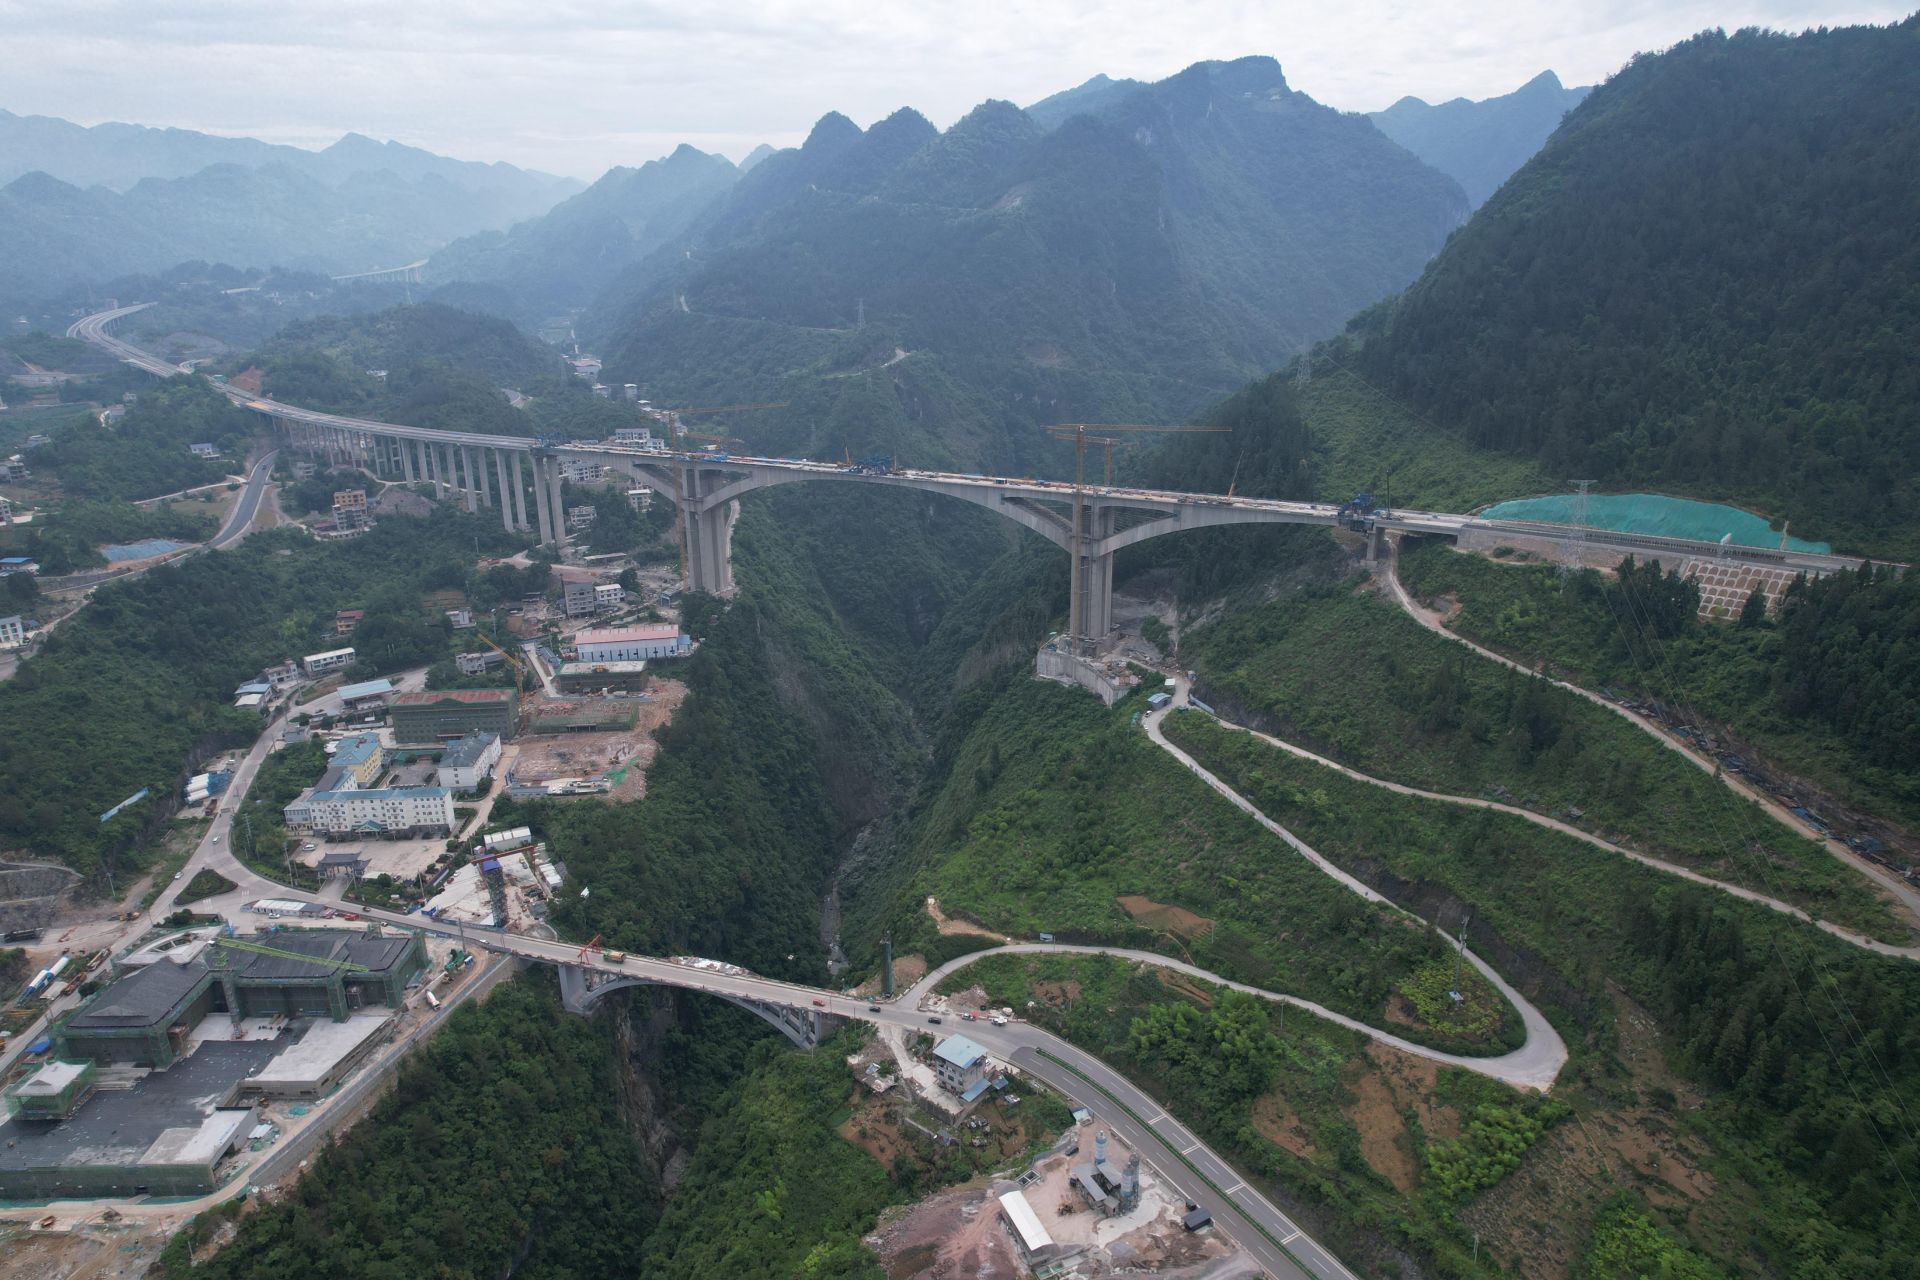 云南庄特大桥主桥位于恩施州鹤峰县庙湾村五虎亭附近,桥址区属构造